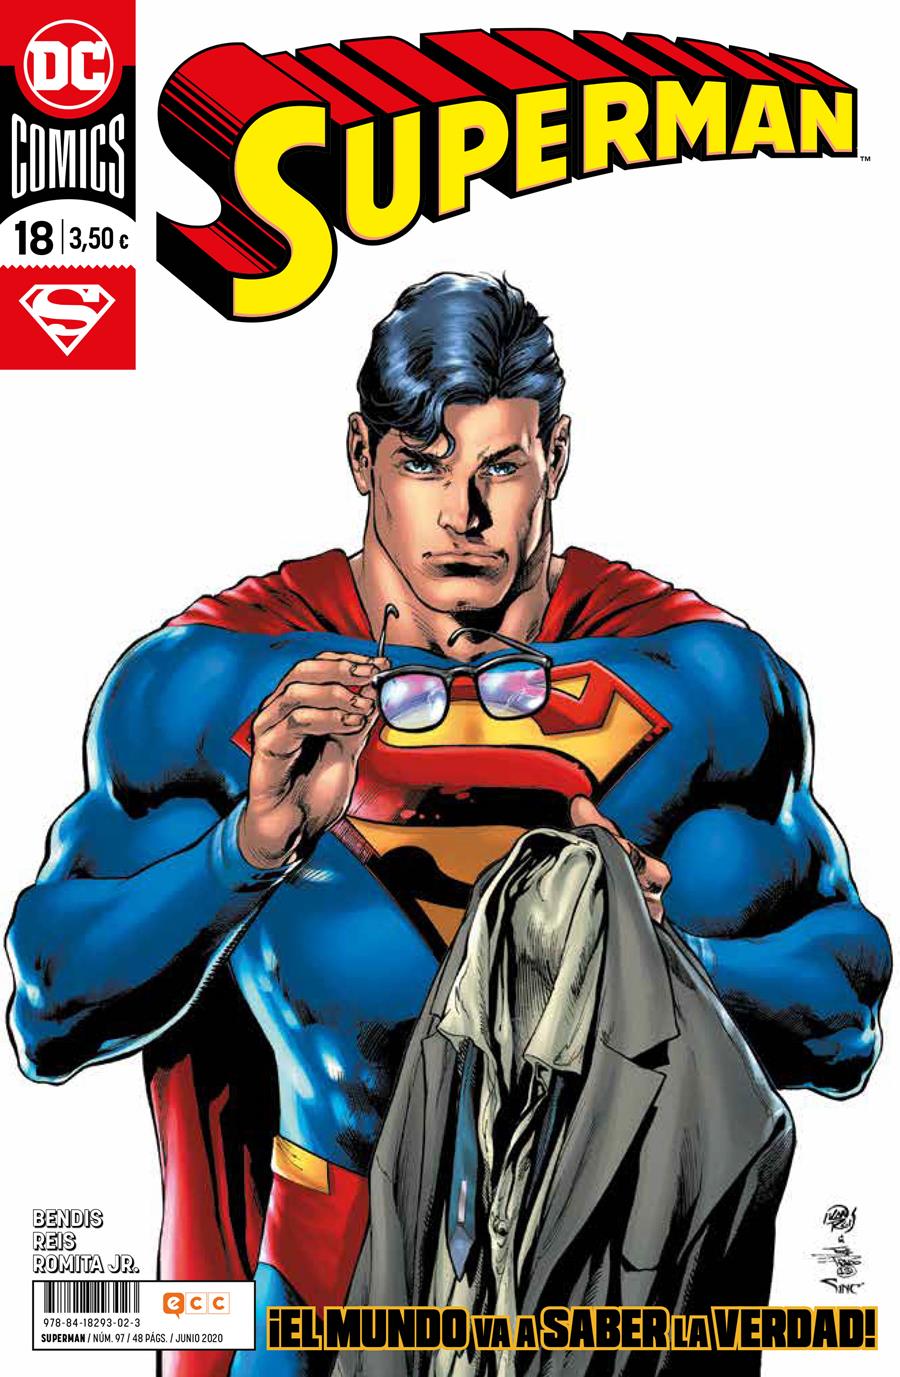 Superman núm. 97/ 18 | N0720-ECC36 | Brian Michael Bendis / David Lafuente / Szymon Kudranski | Terra de Còmic - Tu tienda de cómics online especializada en cómics, manga y merchandising